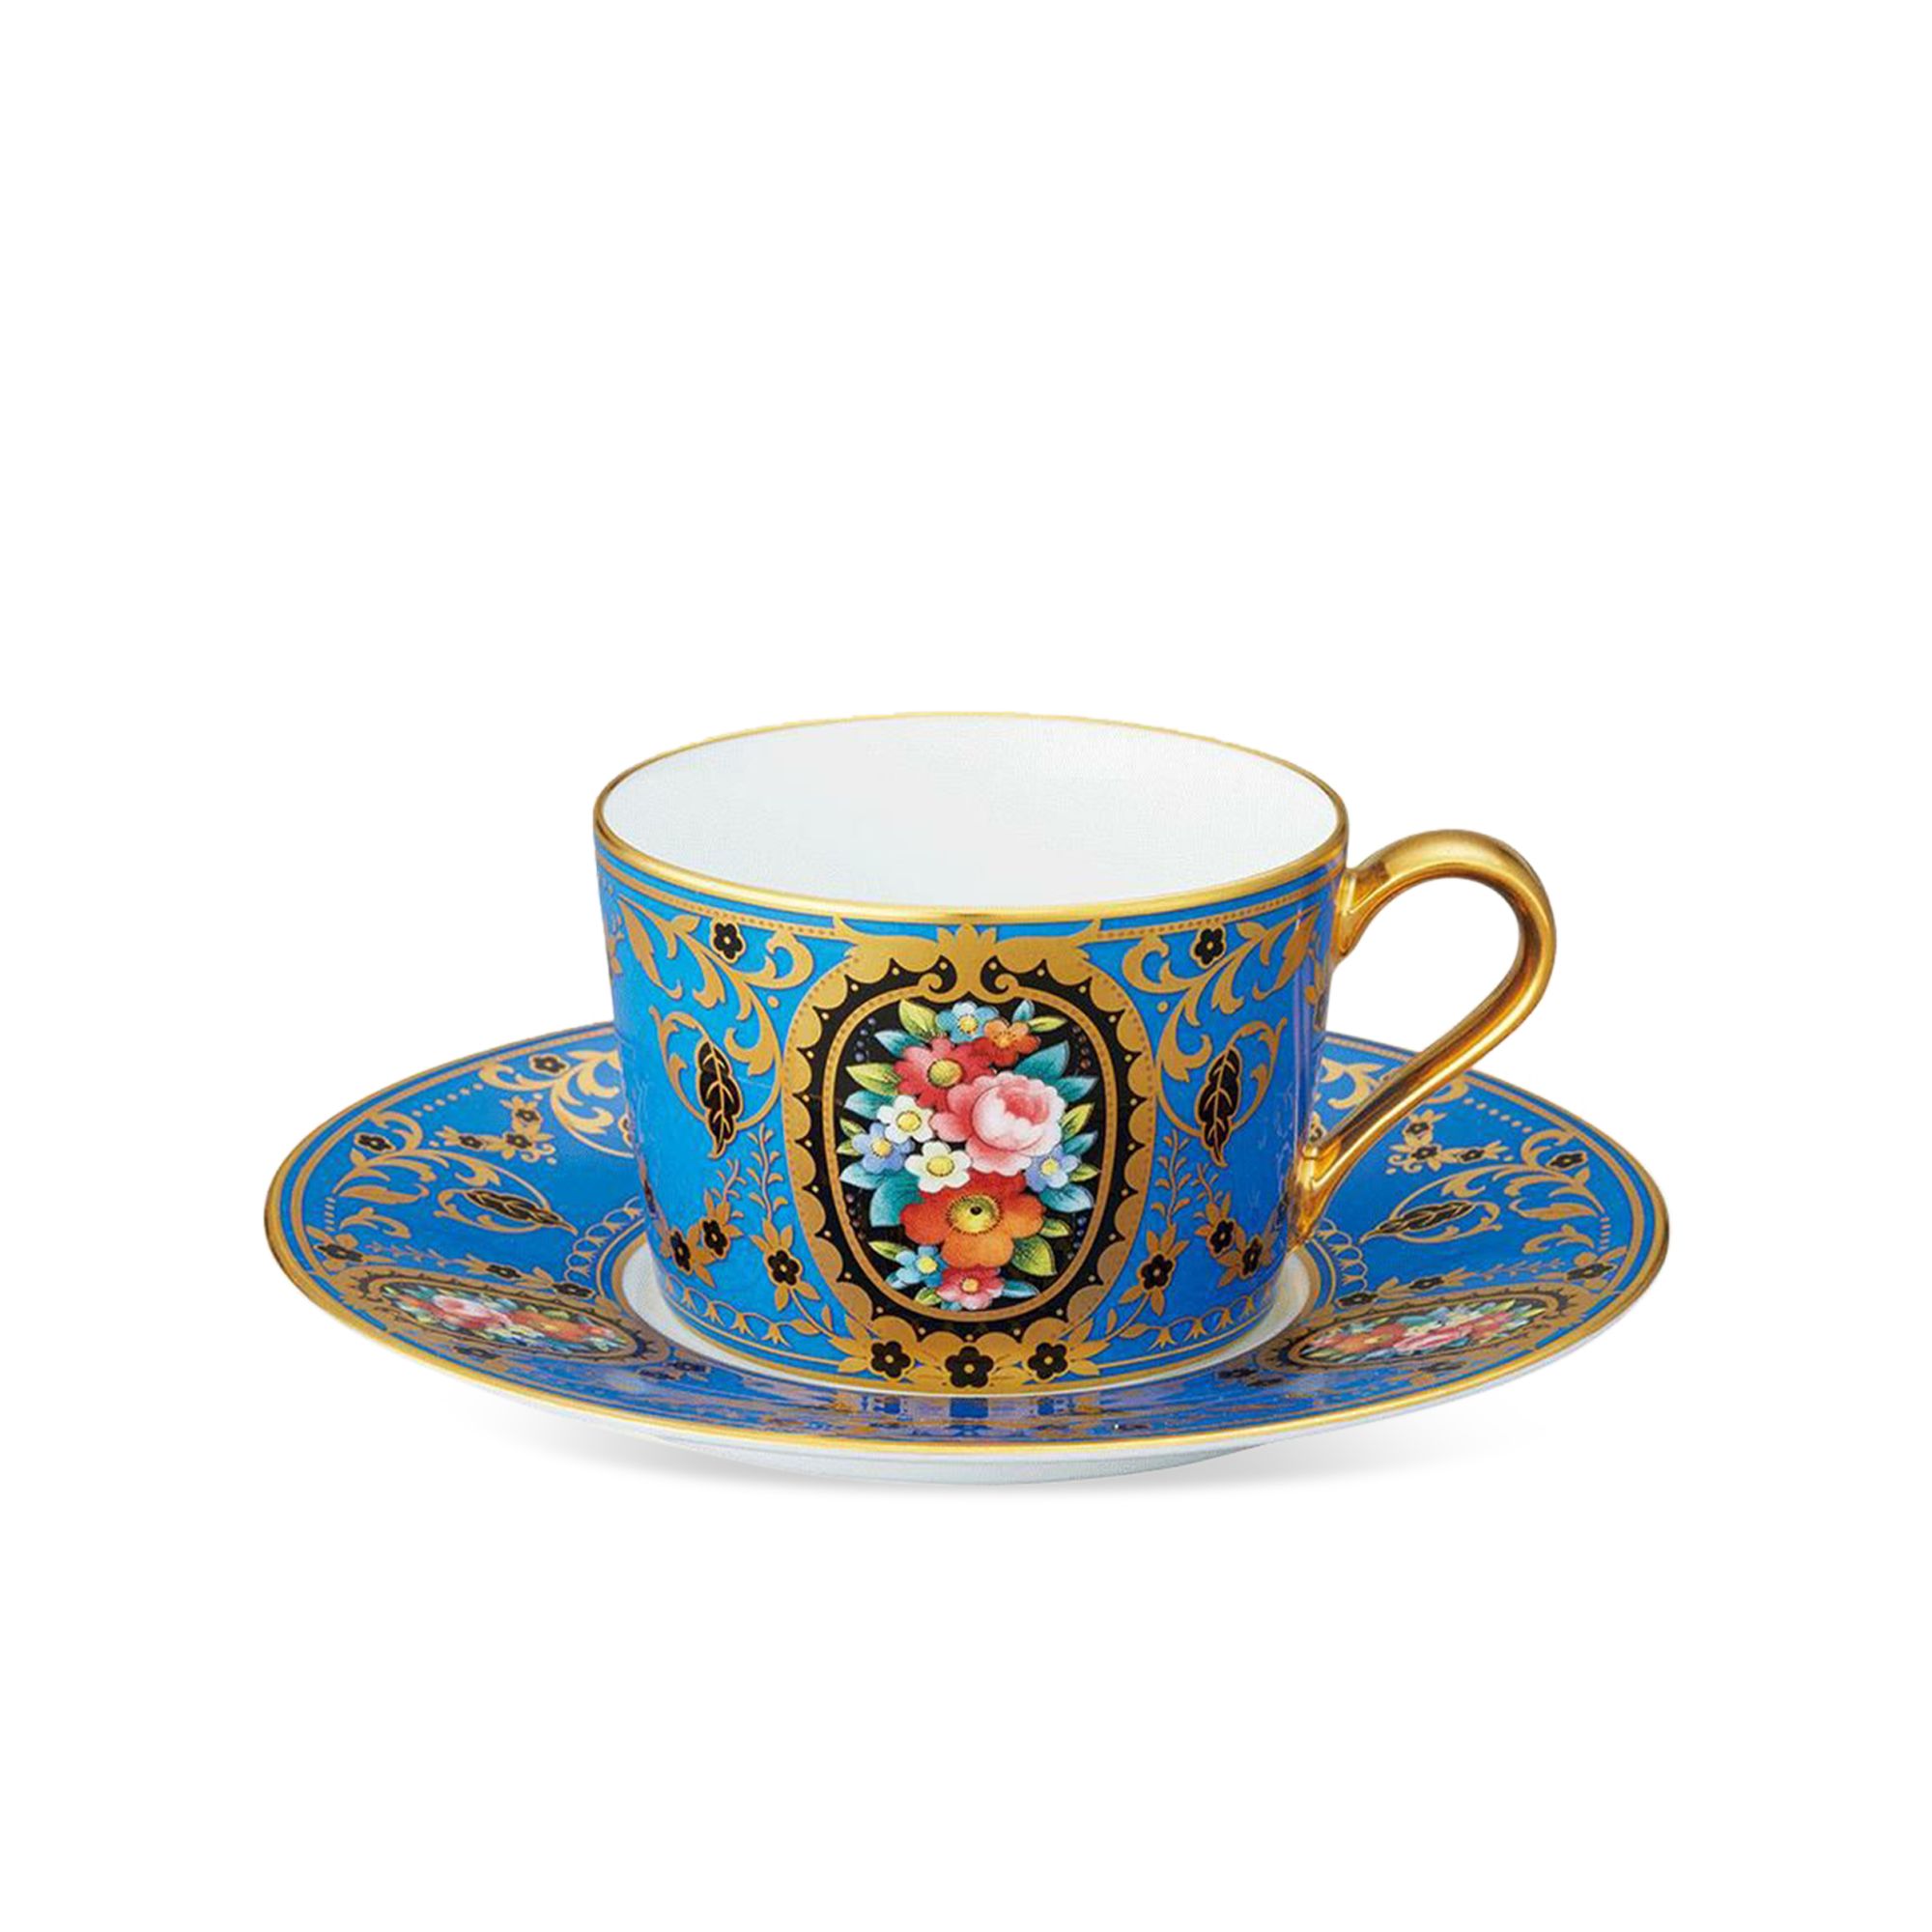  Chén trà (tách trà) kèm đĩa lót dung tích 210ml sứ trắng cao cấp | The Homage Collection H-765J-T2401 